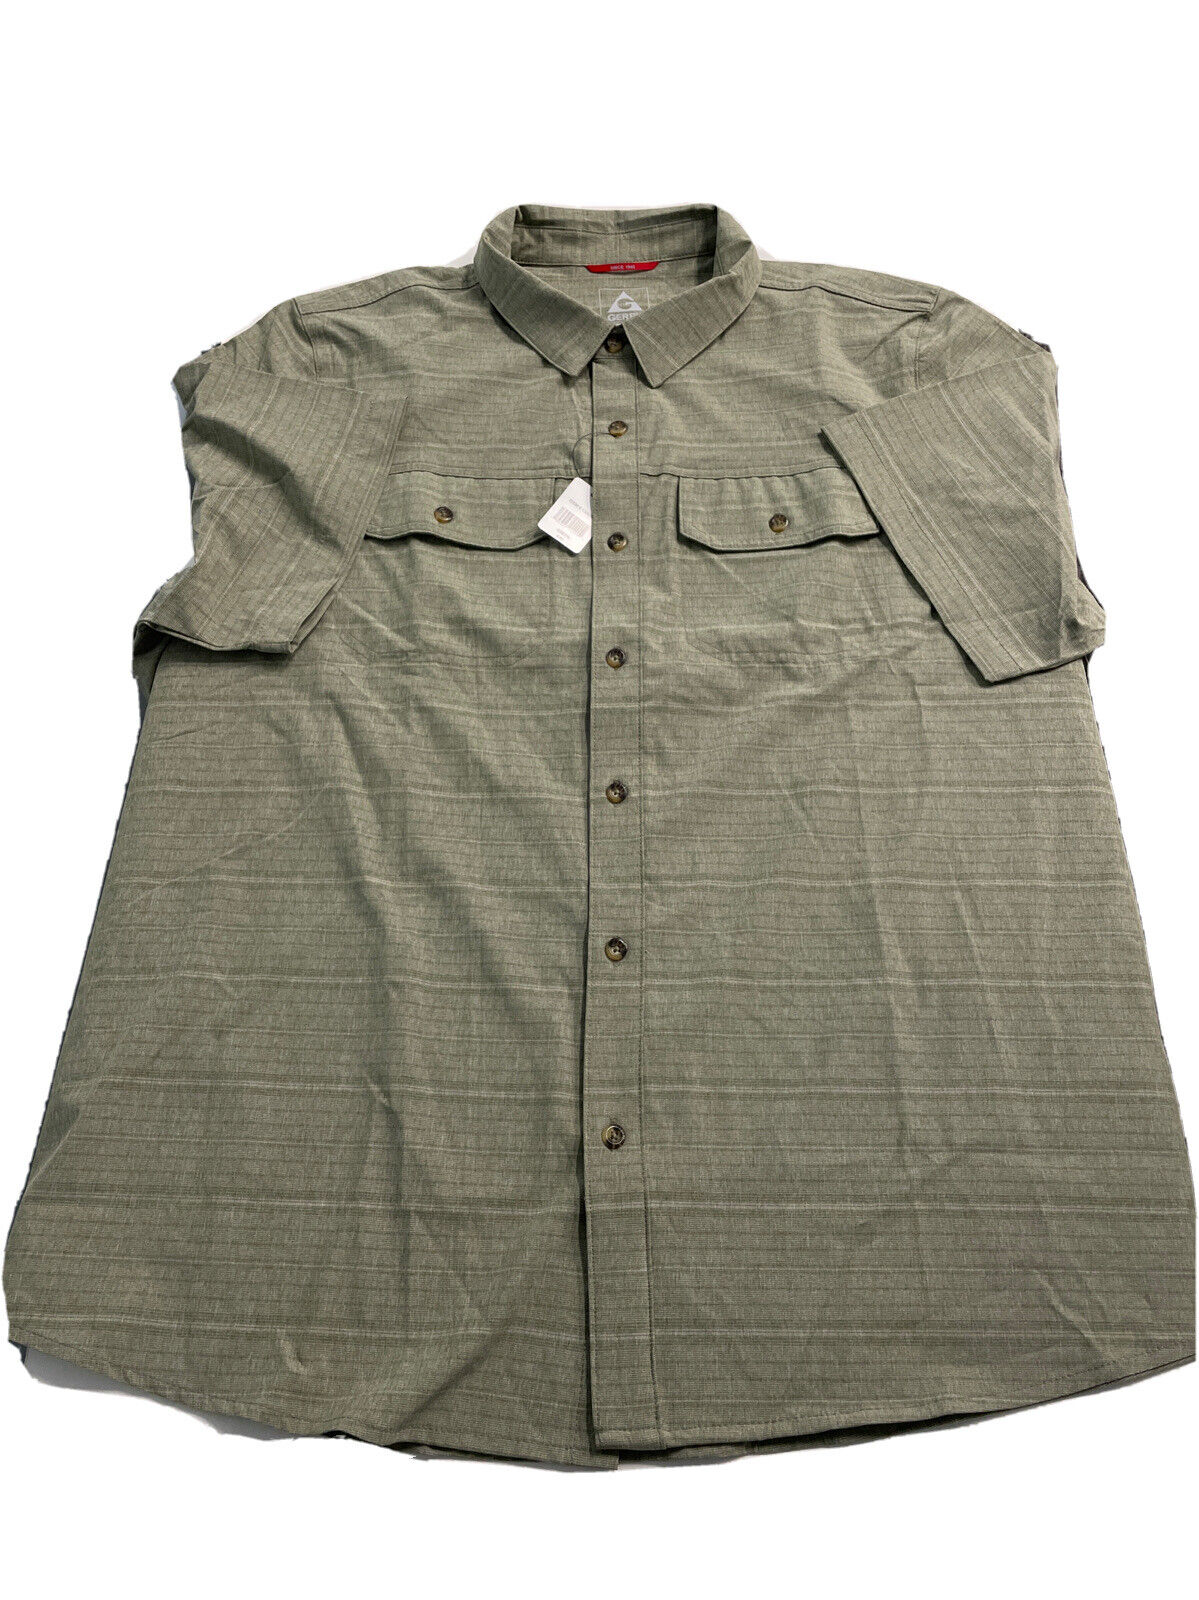 Gerry Men's Short Sleeve Quick Dry Tech Woven Shirt 